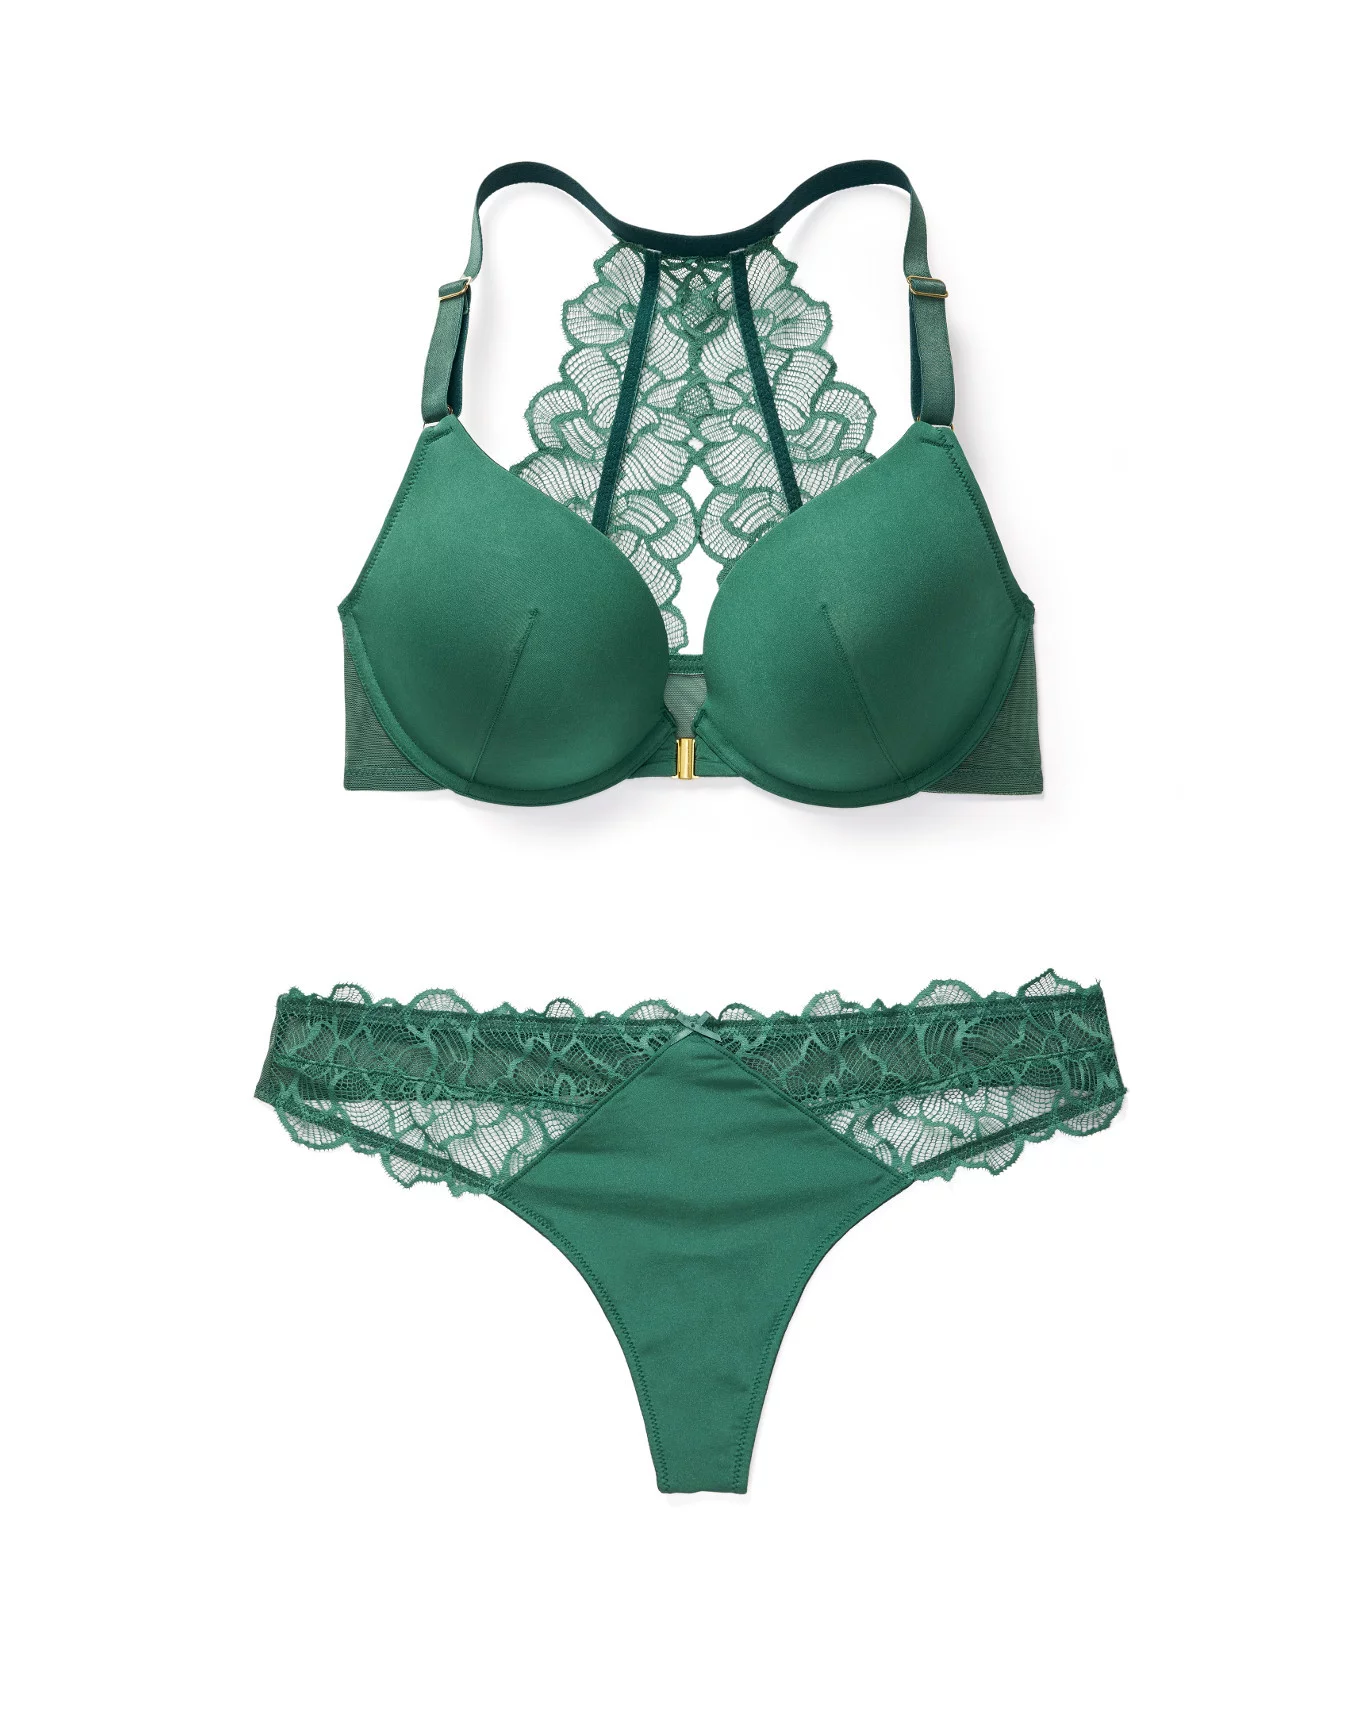 Adore Me Women's Cyla Plunge Bra 36d / Deep Teal Green. : Target